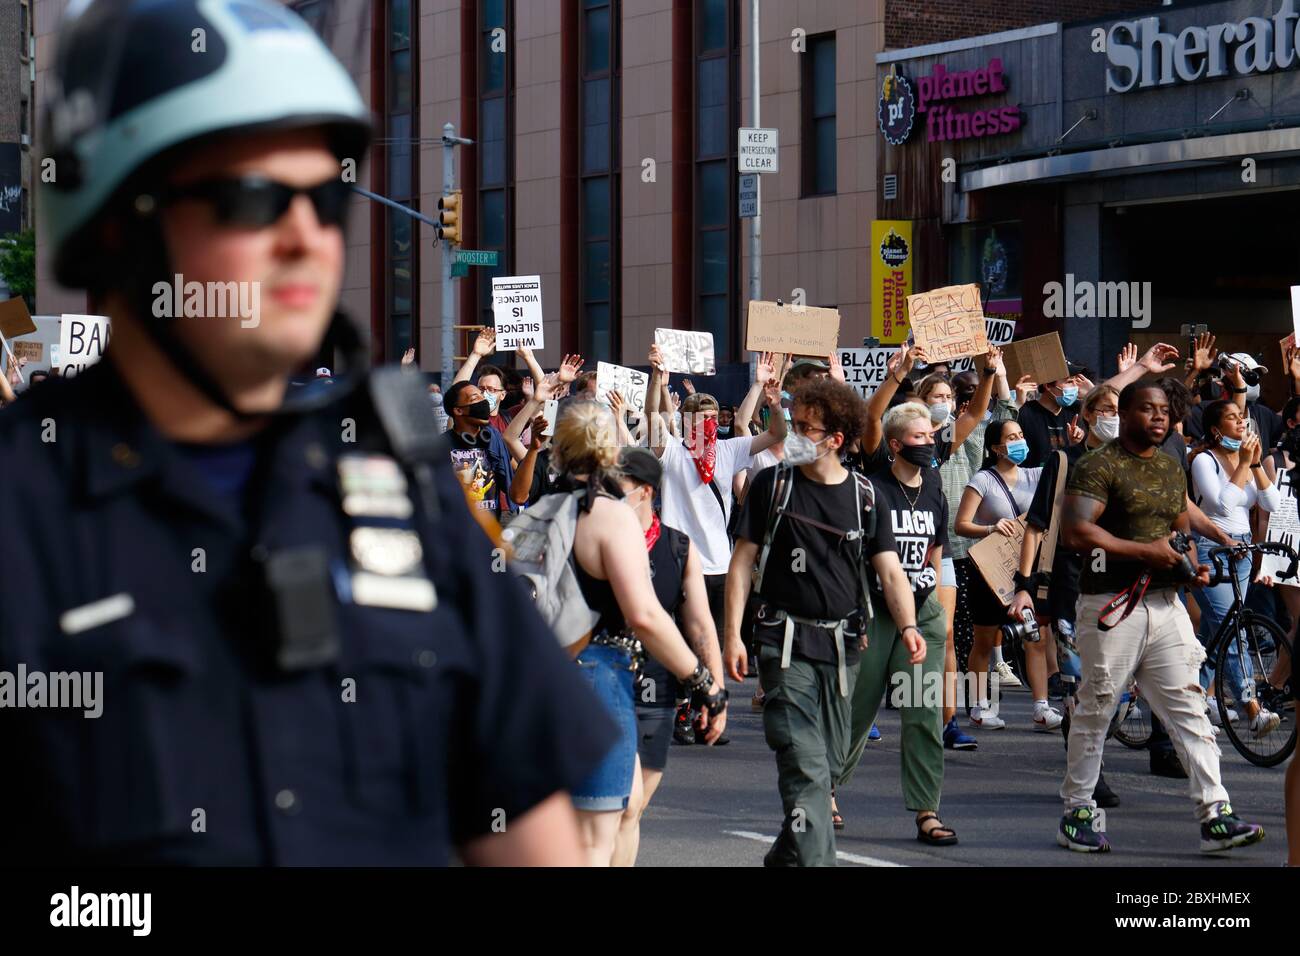 New York, NY 6 juin 2020. Des personnes portant des panneaux, certaines tenant la main dans une position « mains levées, ne pas tirer » lors d'une marche de solidarité de la vie noire, à travers Manhattan appelant à la justice dans une série récente de meurtres de la police américaine : George Floyd, Breonna Taylor, et à d'innombrables autres. Des milliers de personnes se sont jointes à la marche de protestation de Brooklyn, en sillonnant Manhattan, bien après un couvre-feu publié plus tôt dans la semaine pour freiner les cambriolages organisés et les pillages. Un flic dans un casque anti-émeute marche le long du groupe. 6 juin 2020 Banque D'Images